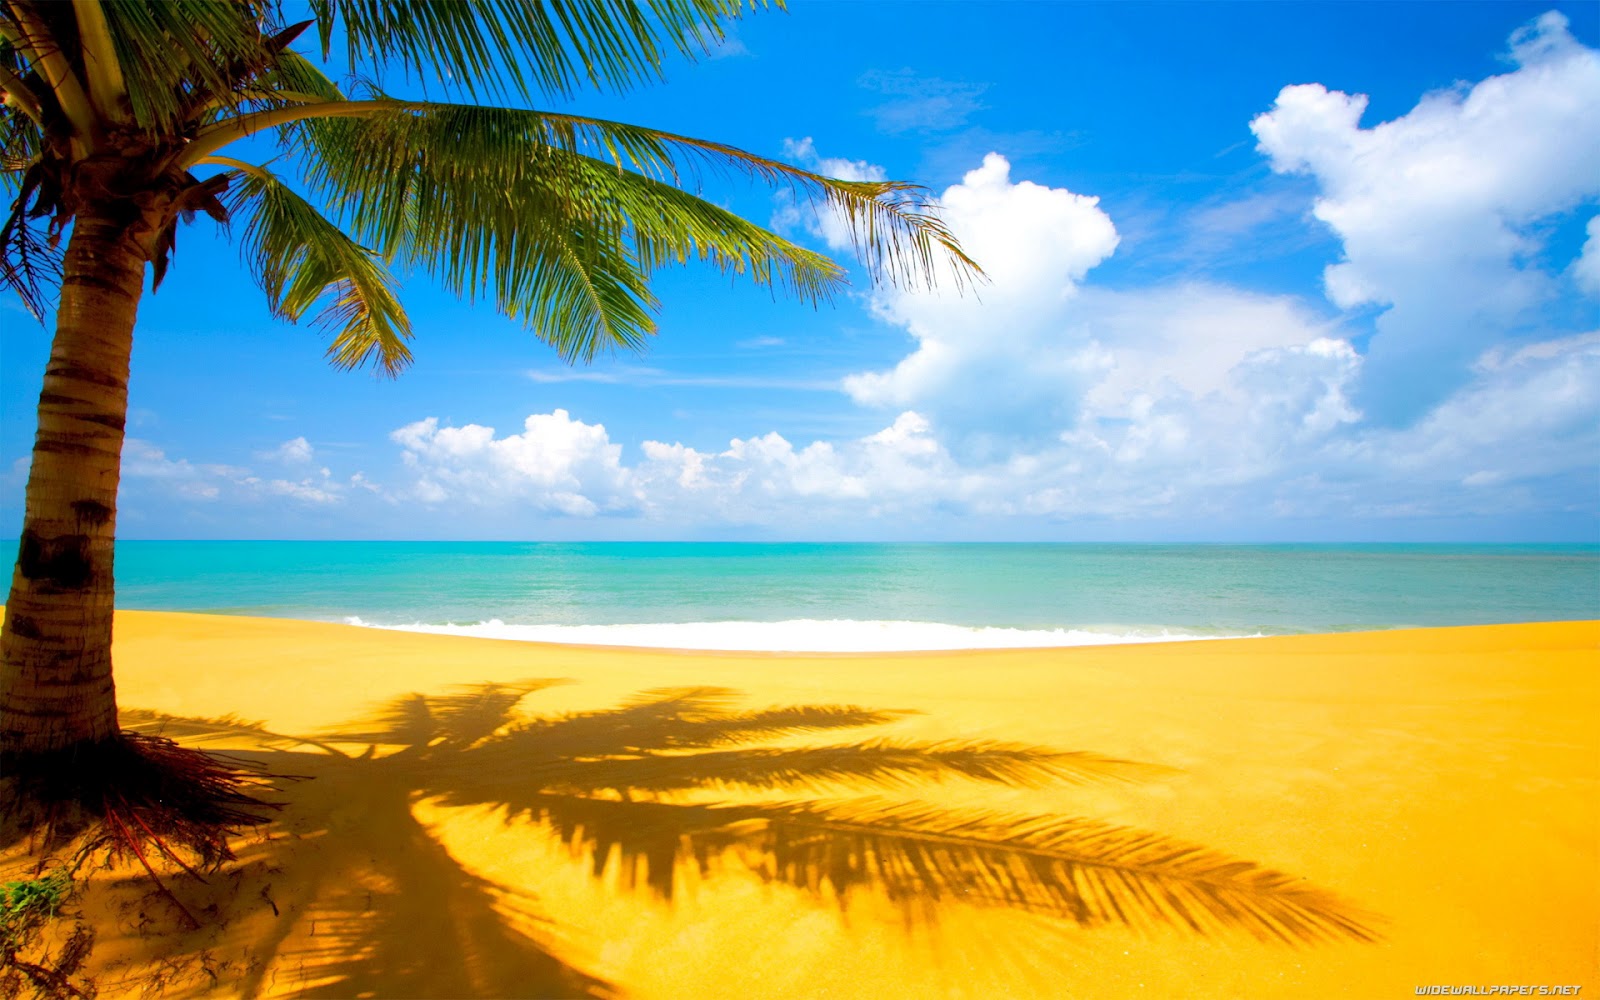 Đắm mình trong vẻ đẹp của thiên nhiên và bãi biển tuyệt đẹp với hình nền Beautiful Beach Nature Background. Hãy xem hình ảnh để tận hưởng cảm giác thư giãn và yên bình khi sử dụng máy tính.